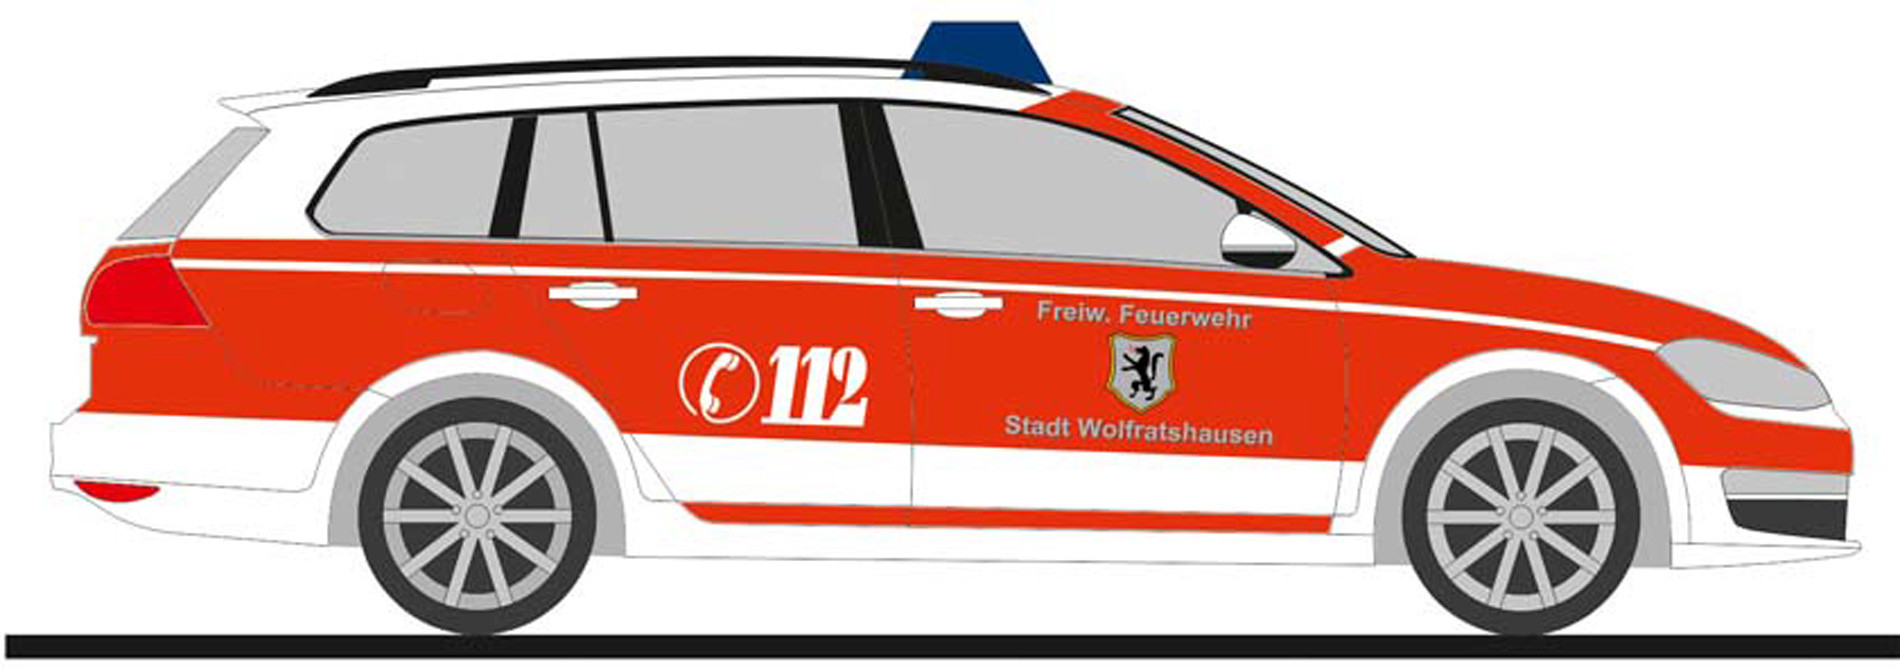 Rietze VW Golf 7 Variant "Feuerwehr Wolfratshausen", NH 03-04/21